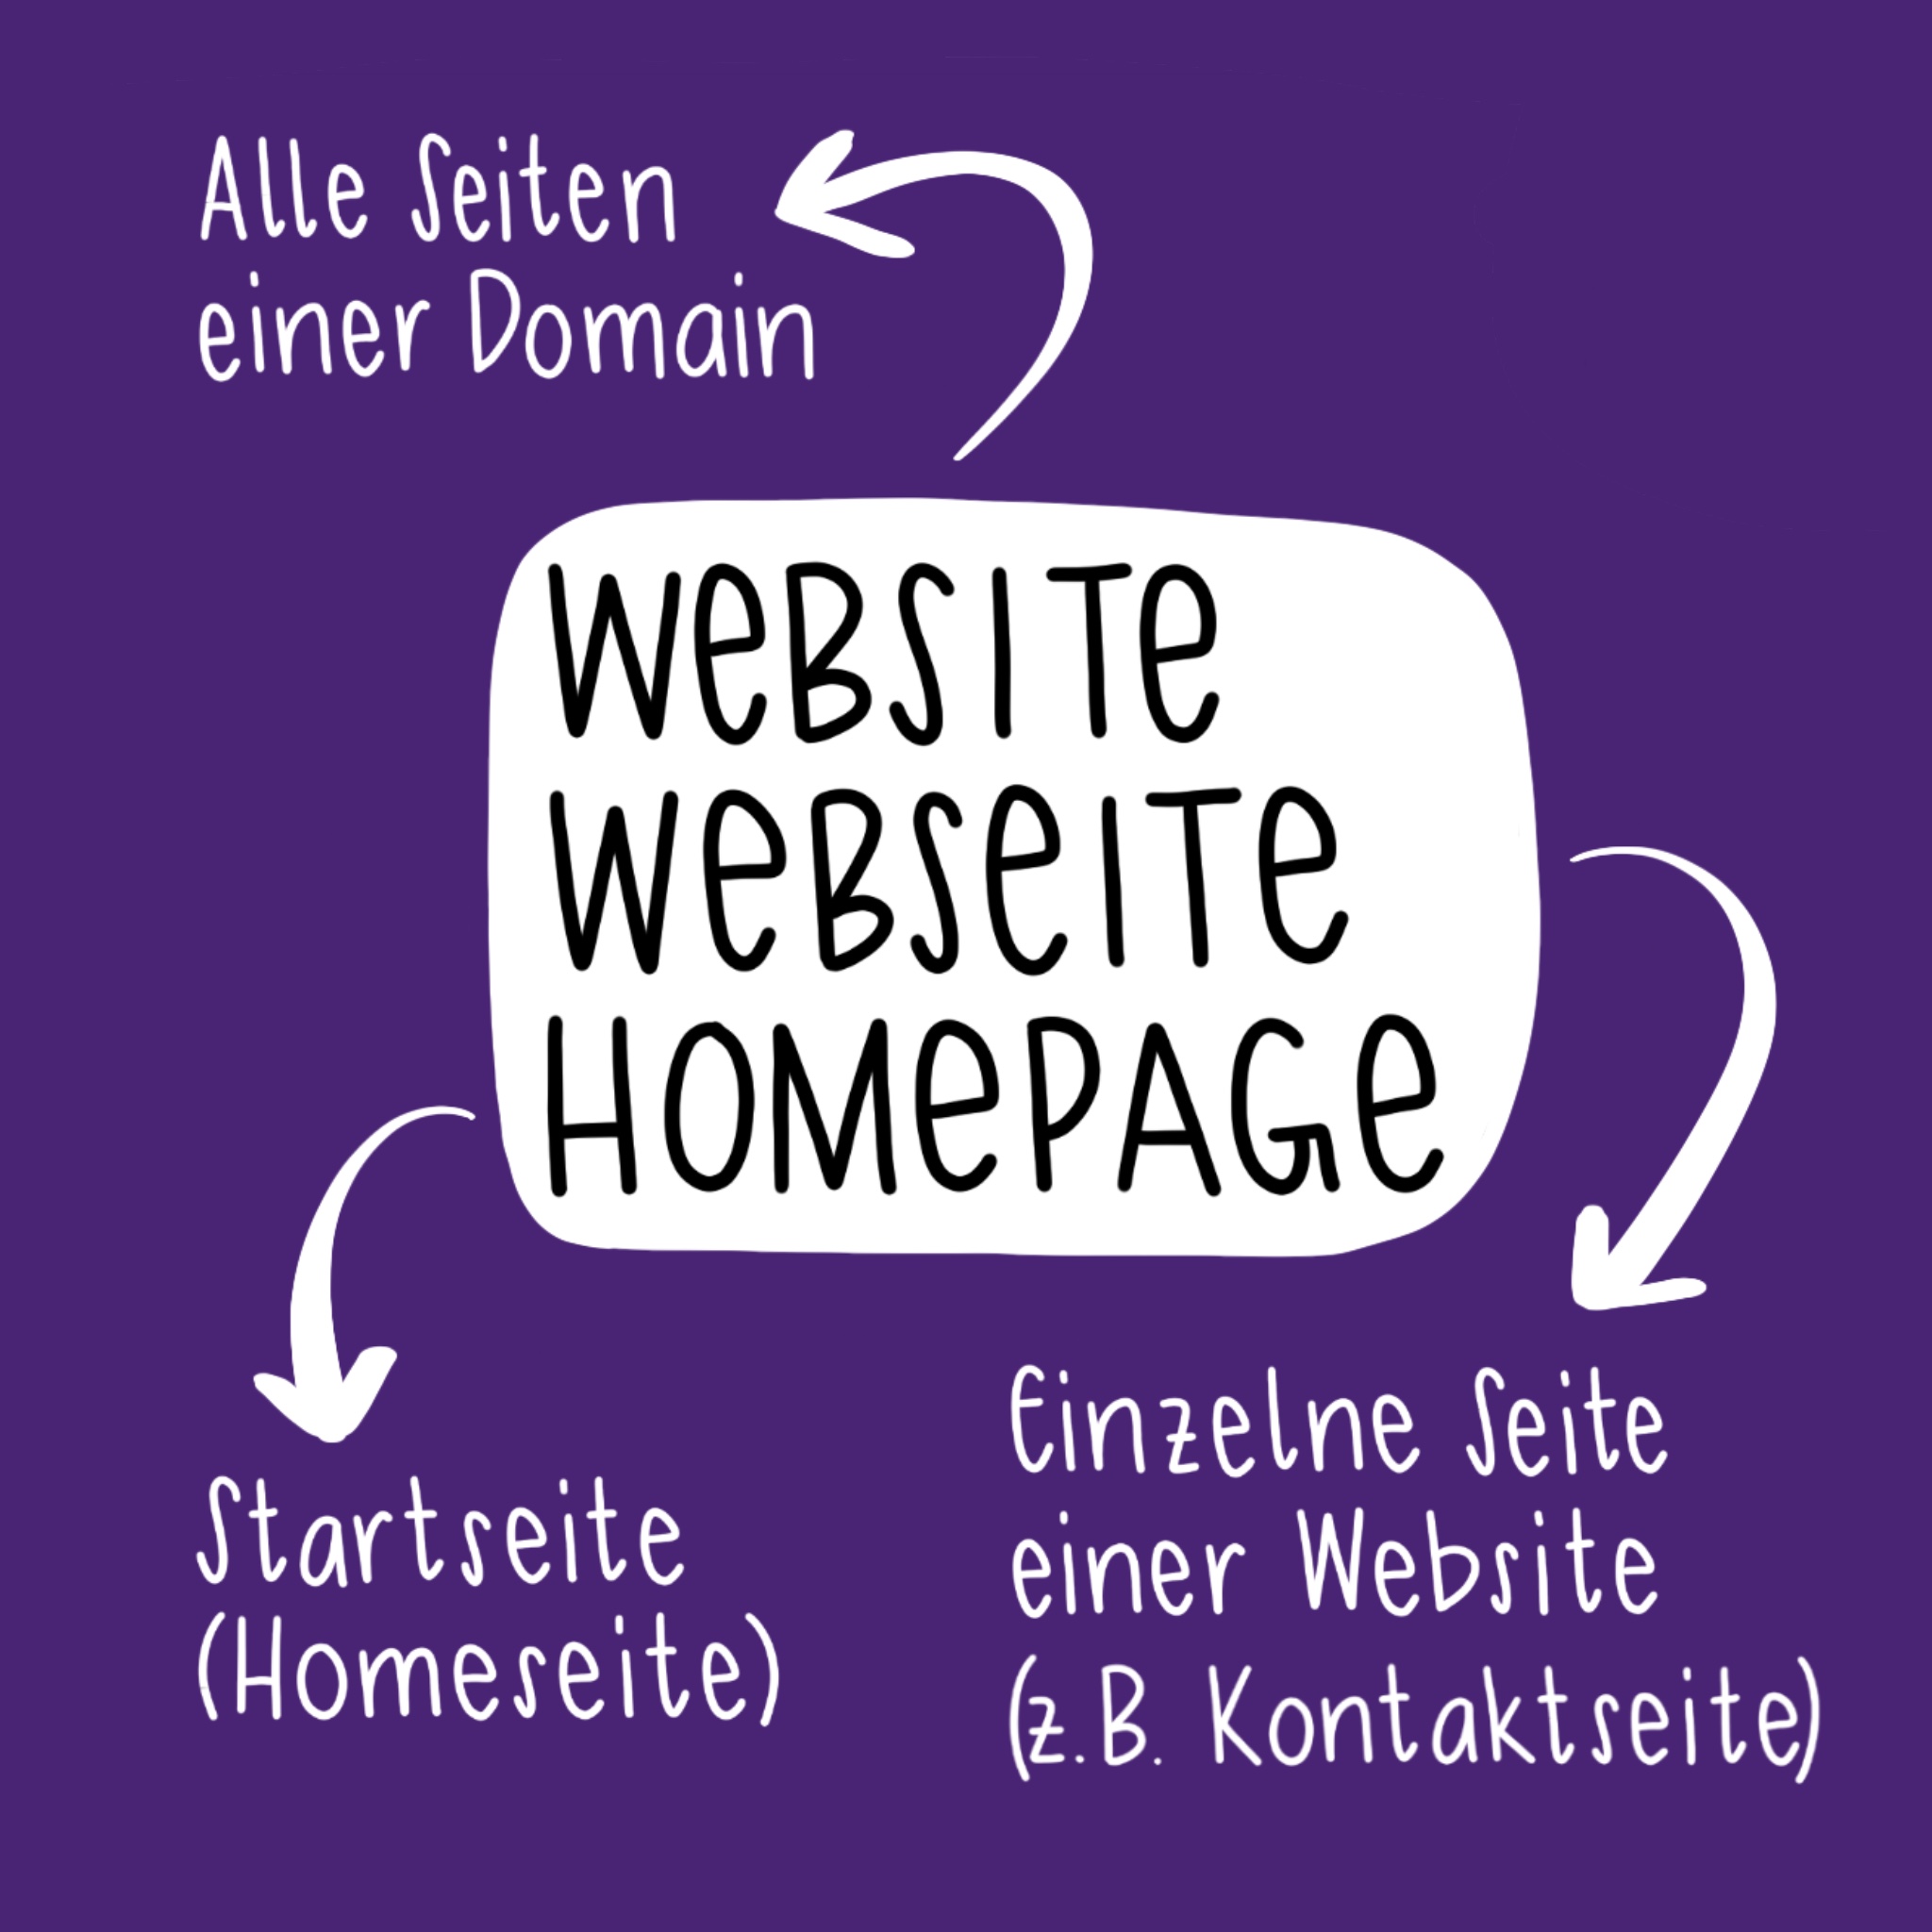 Was ist eine Homepage?